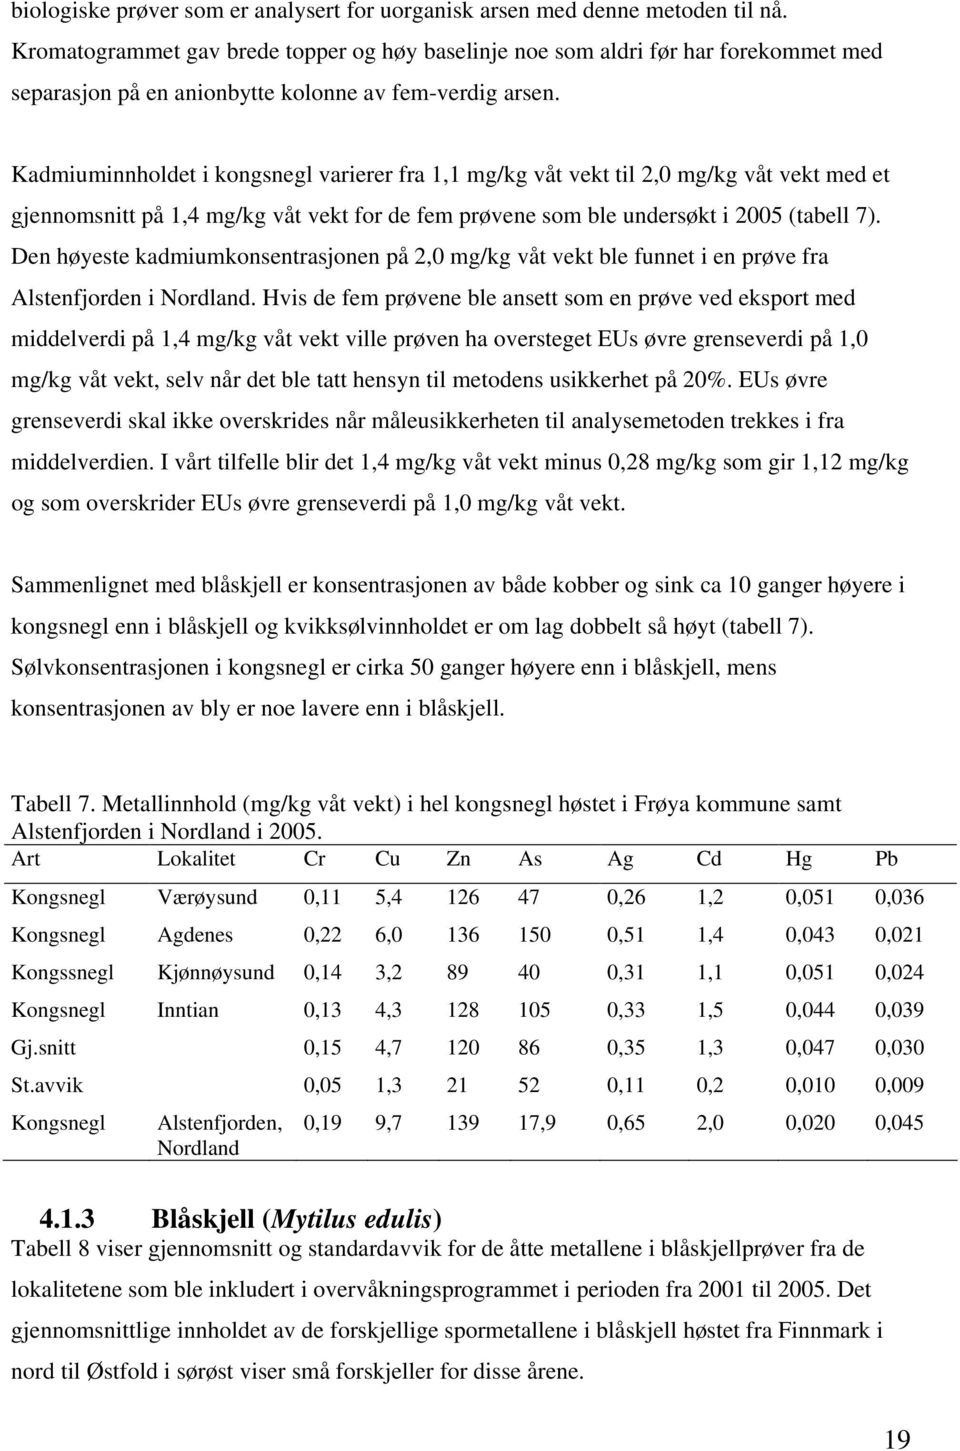 Kadmiuminnholdet i kongsnegl varierer fra 1,1 mg/kg våt vekt til 2,0 mg/kg våt vekt med et gjennomsnitt på 1,4 mg/kg våt vekt for de fem prøvene som ble undersøkt i 2005 (tabell 7).